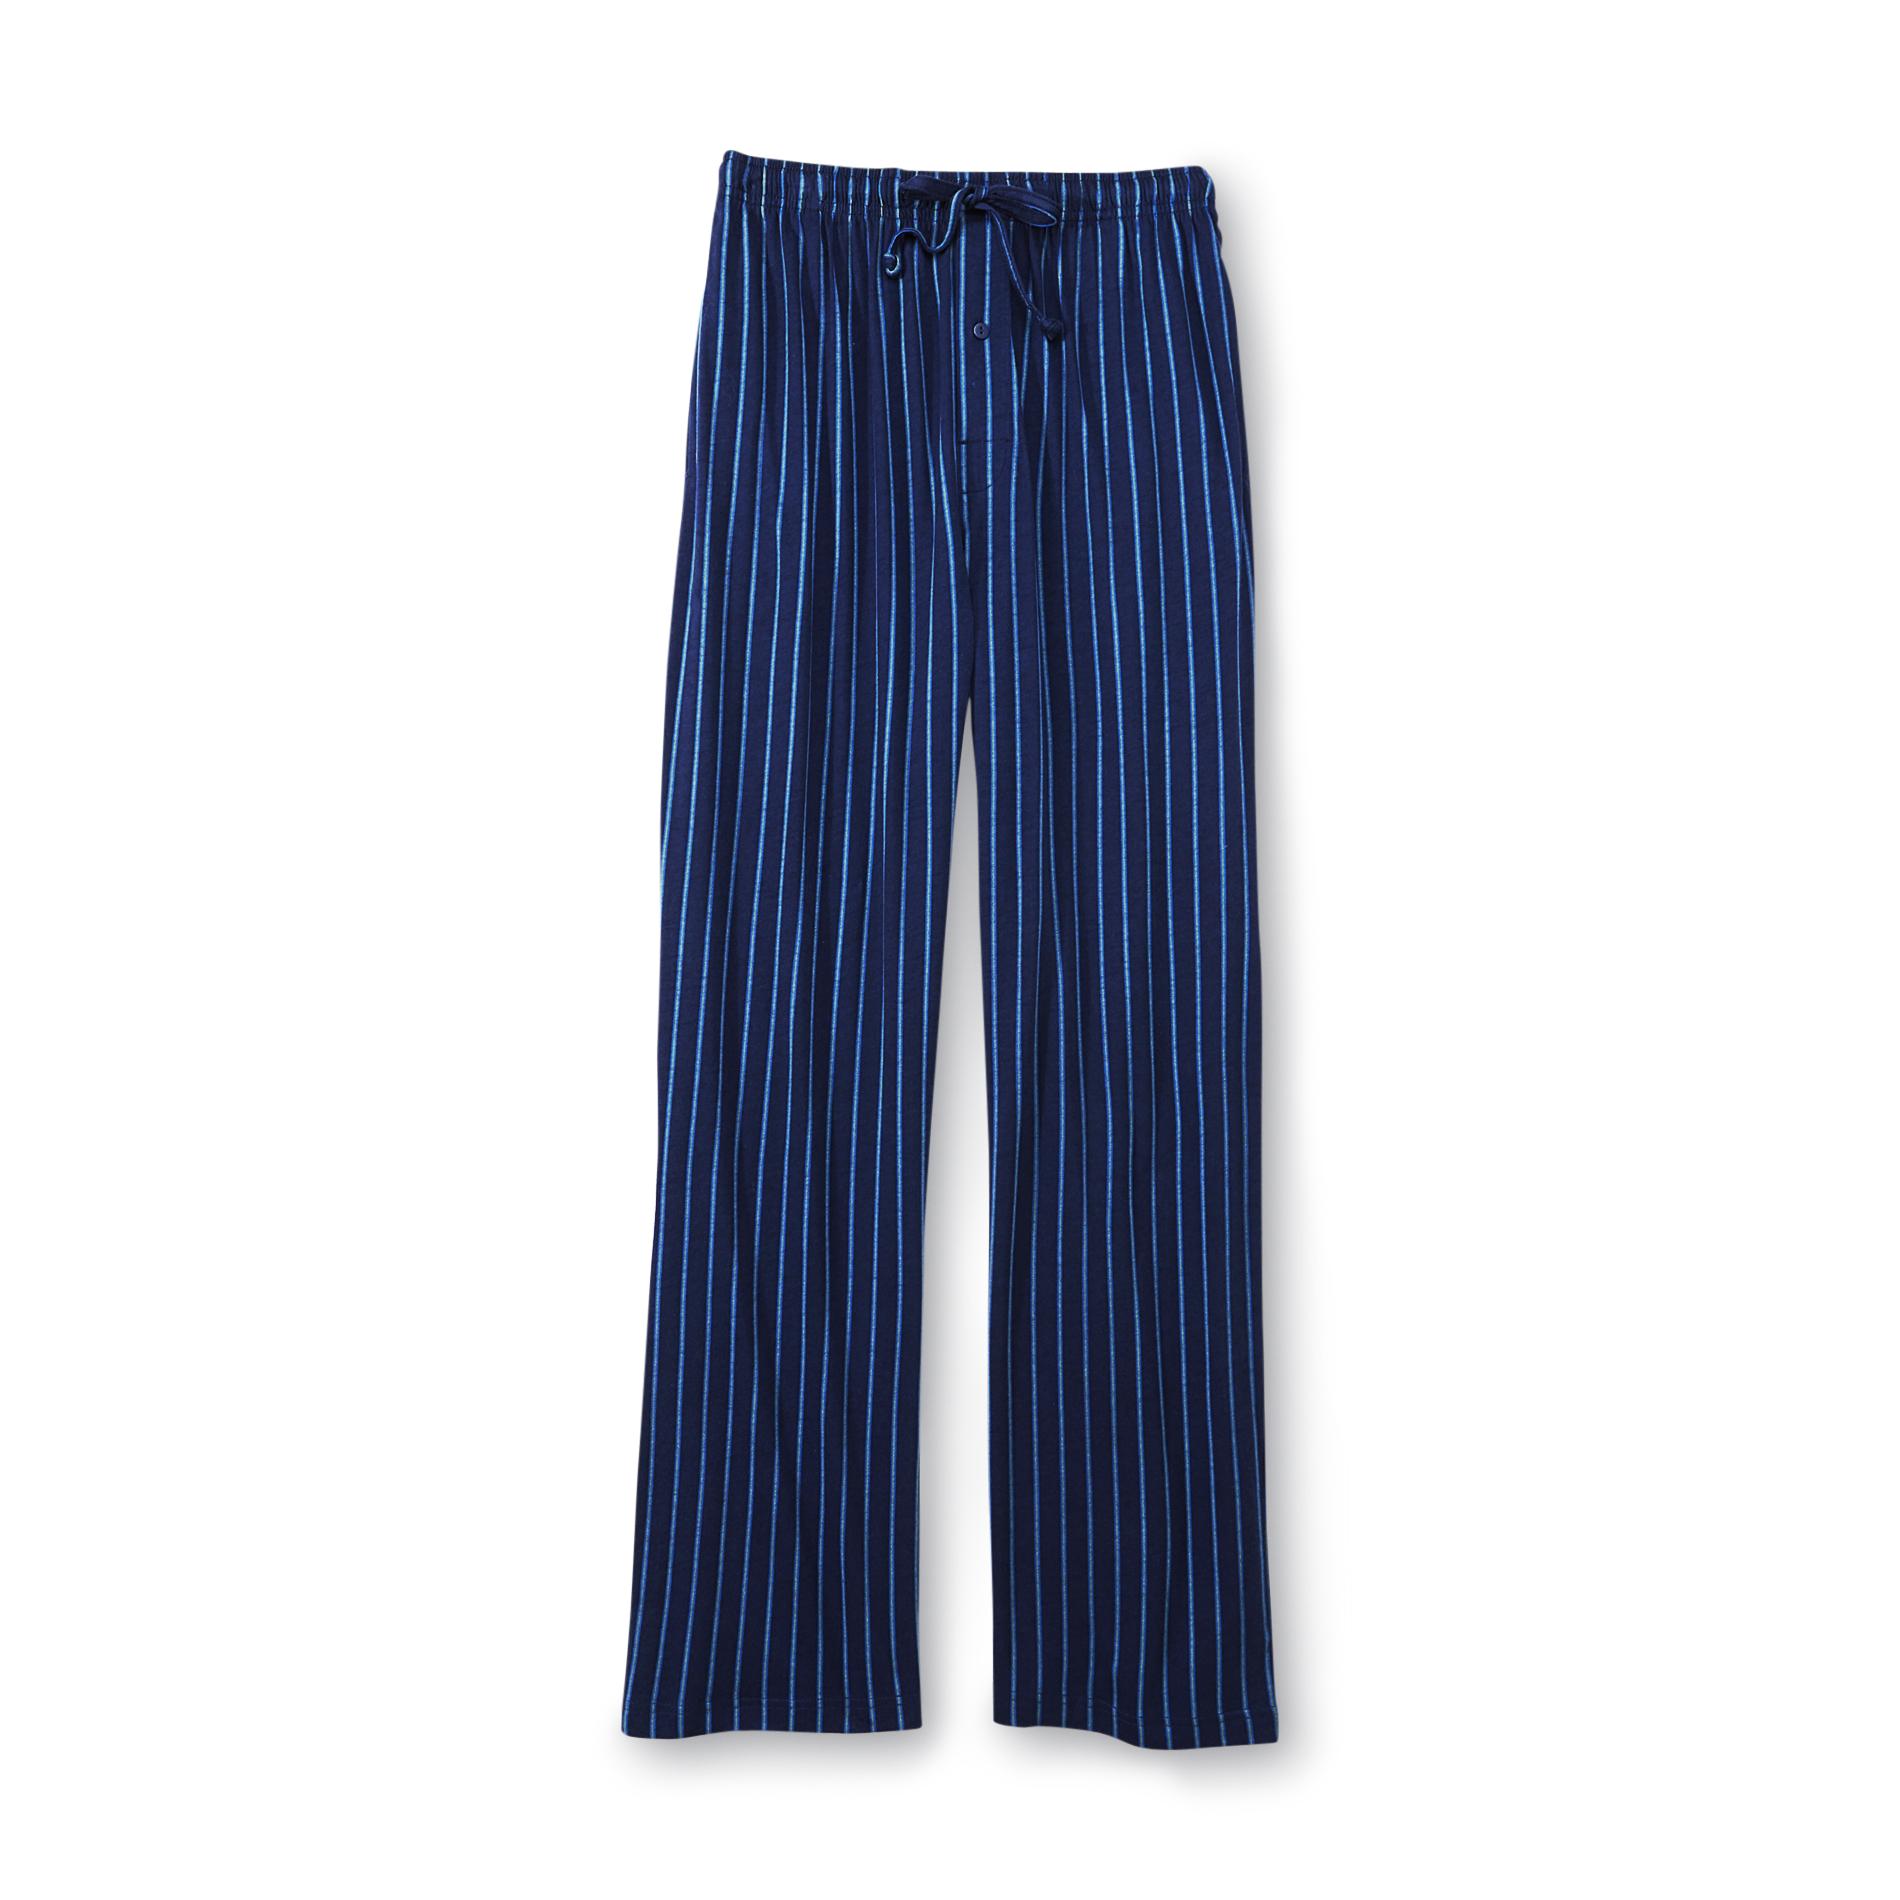 Joe Boxer Men's Knit Lounge Pants - Striped